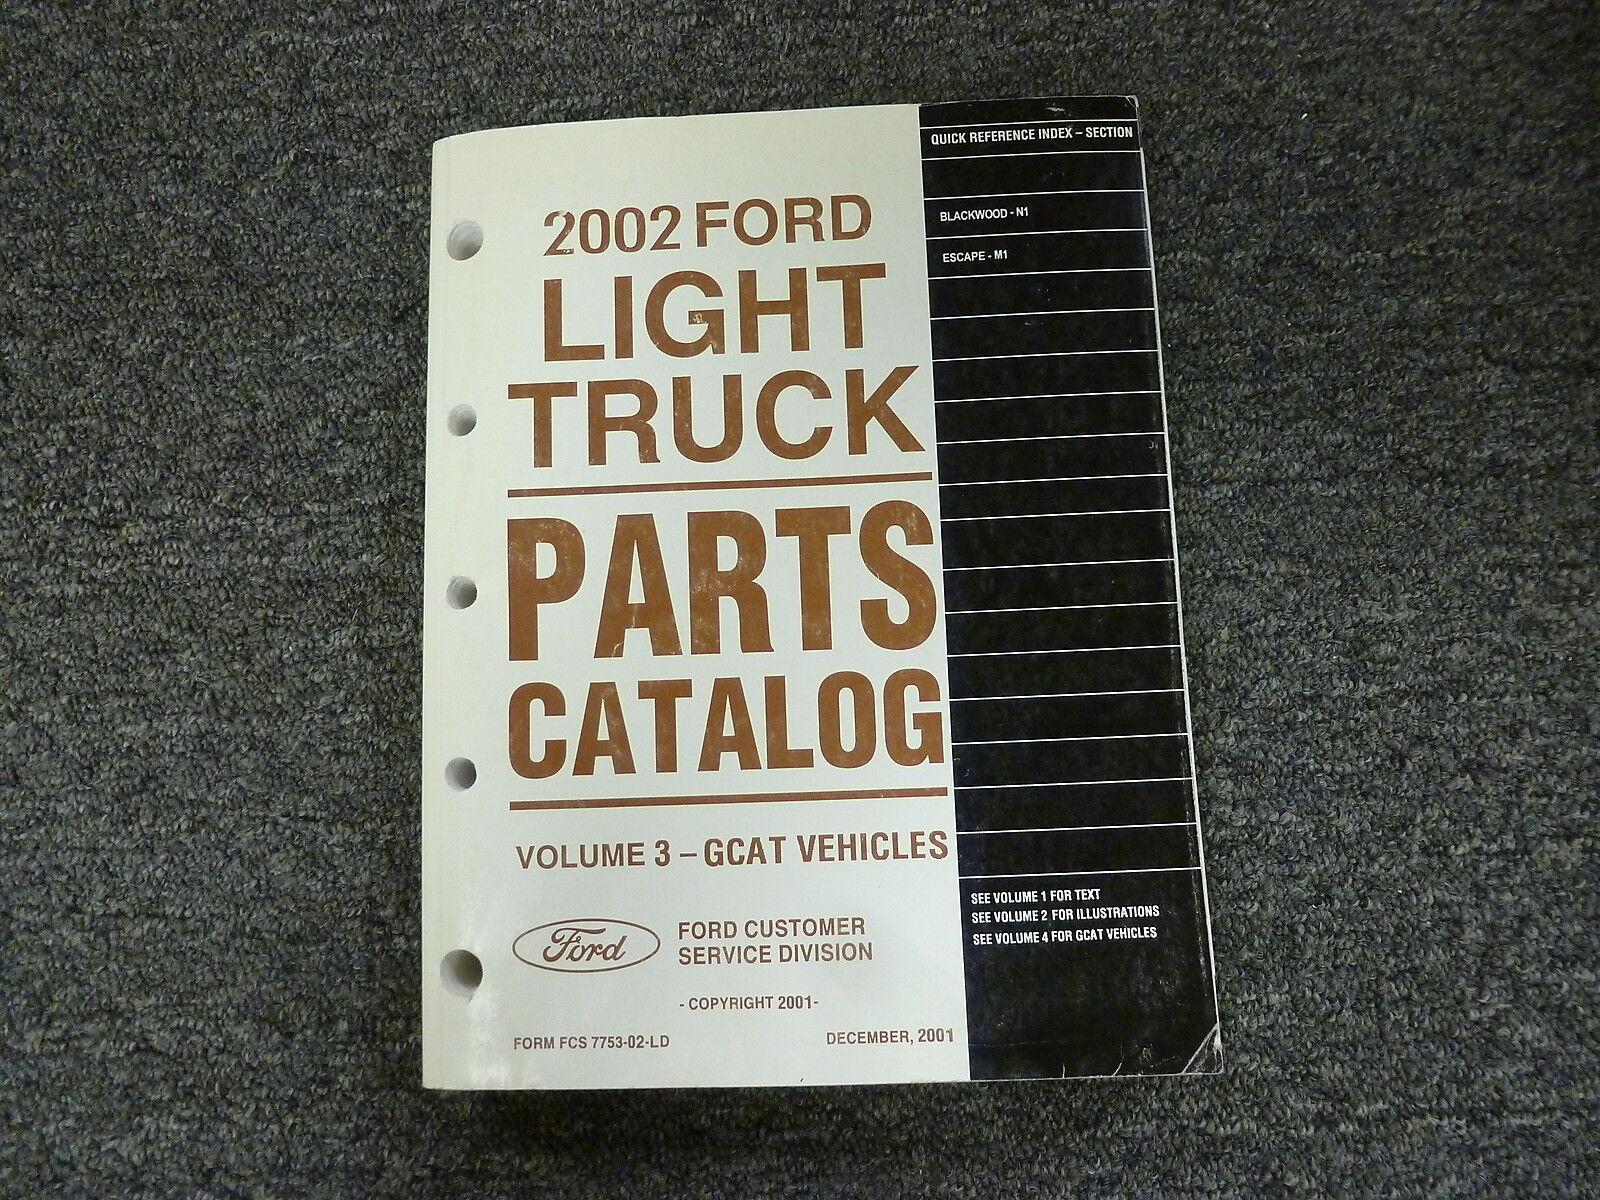 2002 Lincoln Blackwood Crew Cab Pickup Truck Parts Catalog Manual Book 5.4L V8